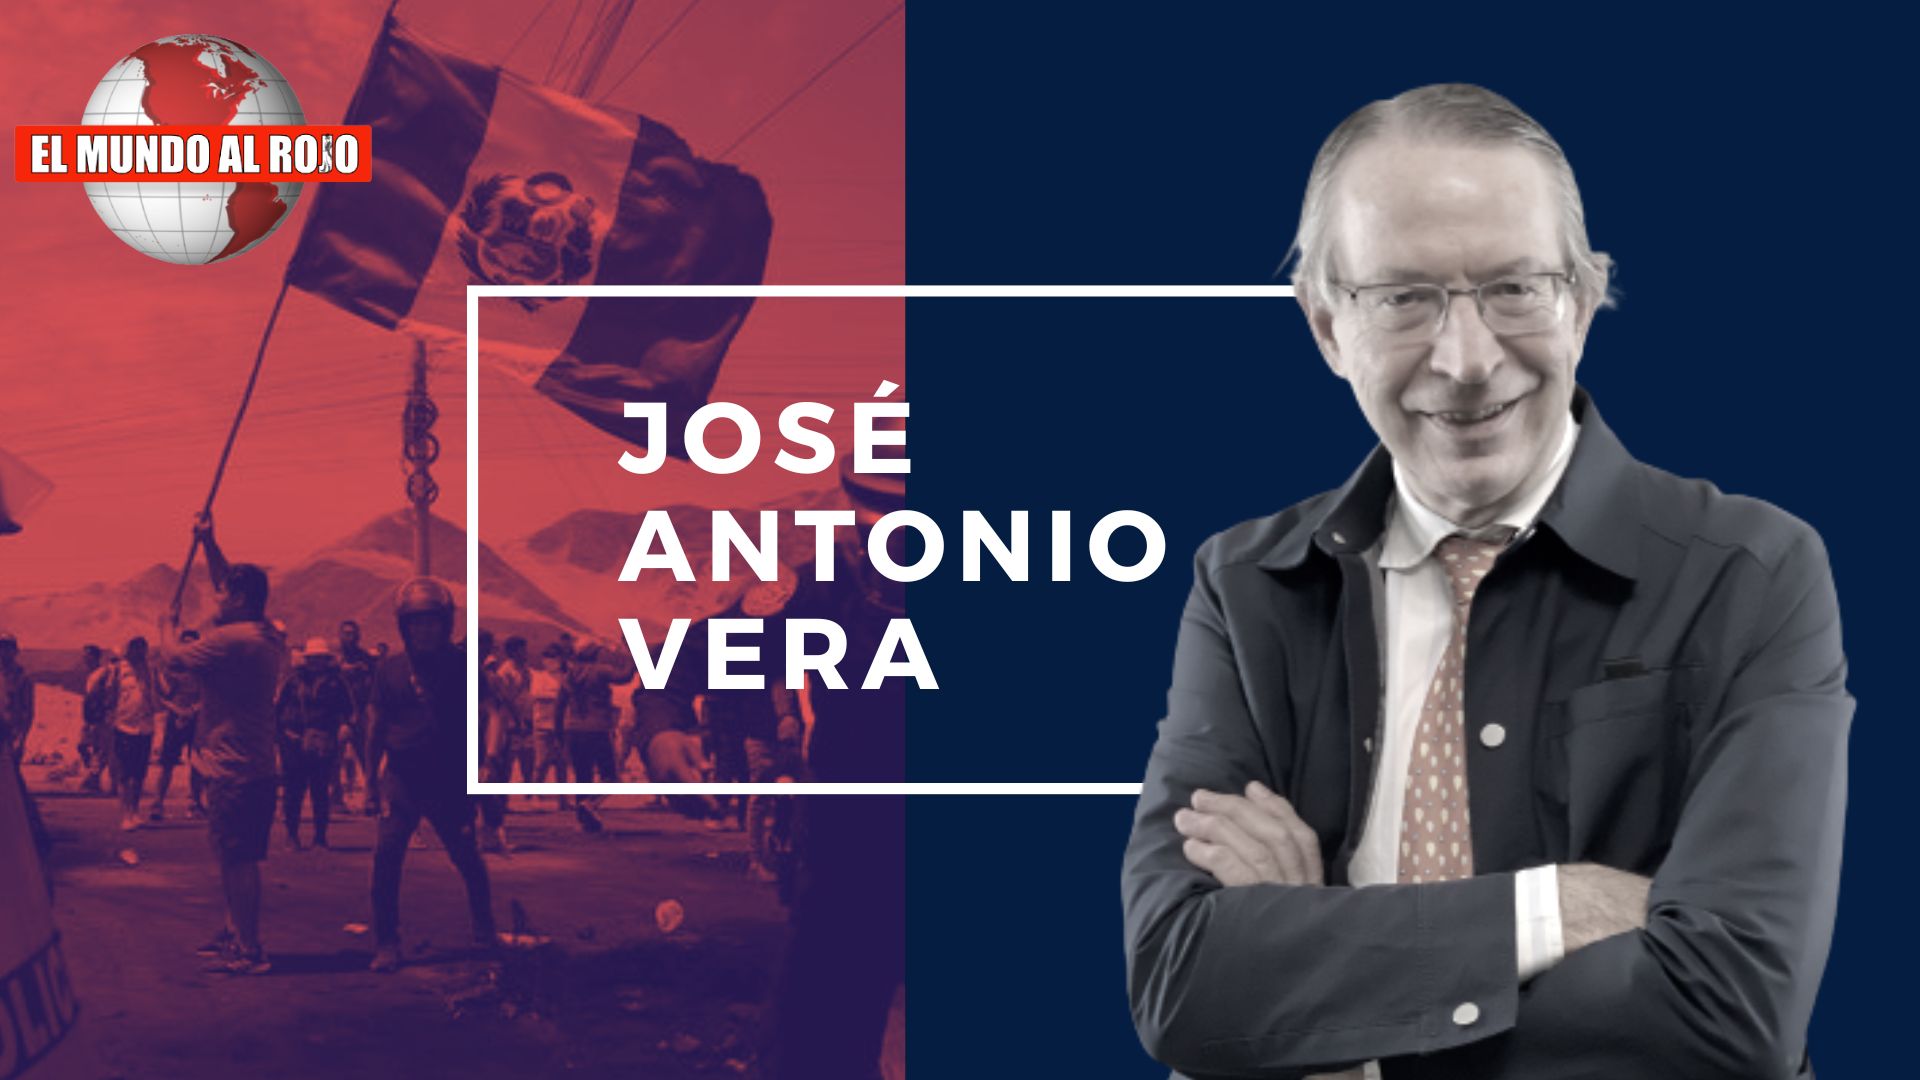 José Antonio Vera